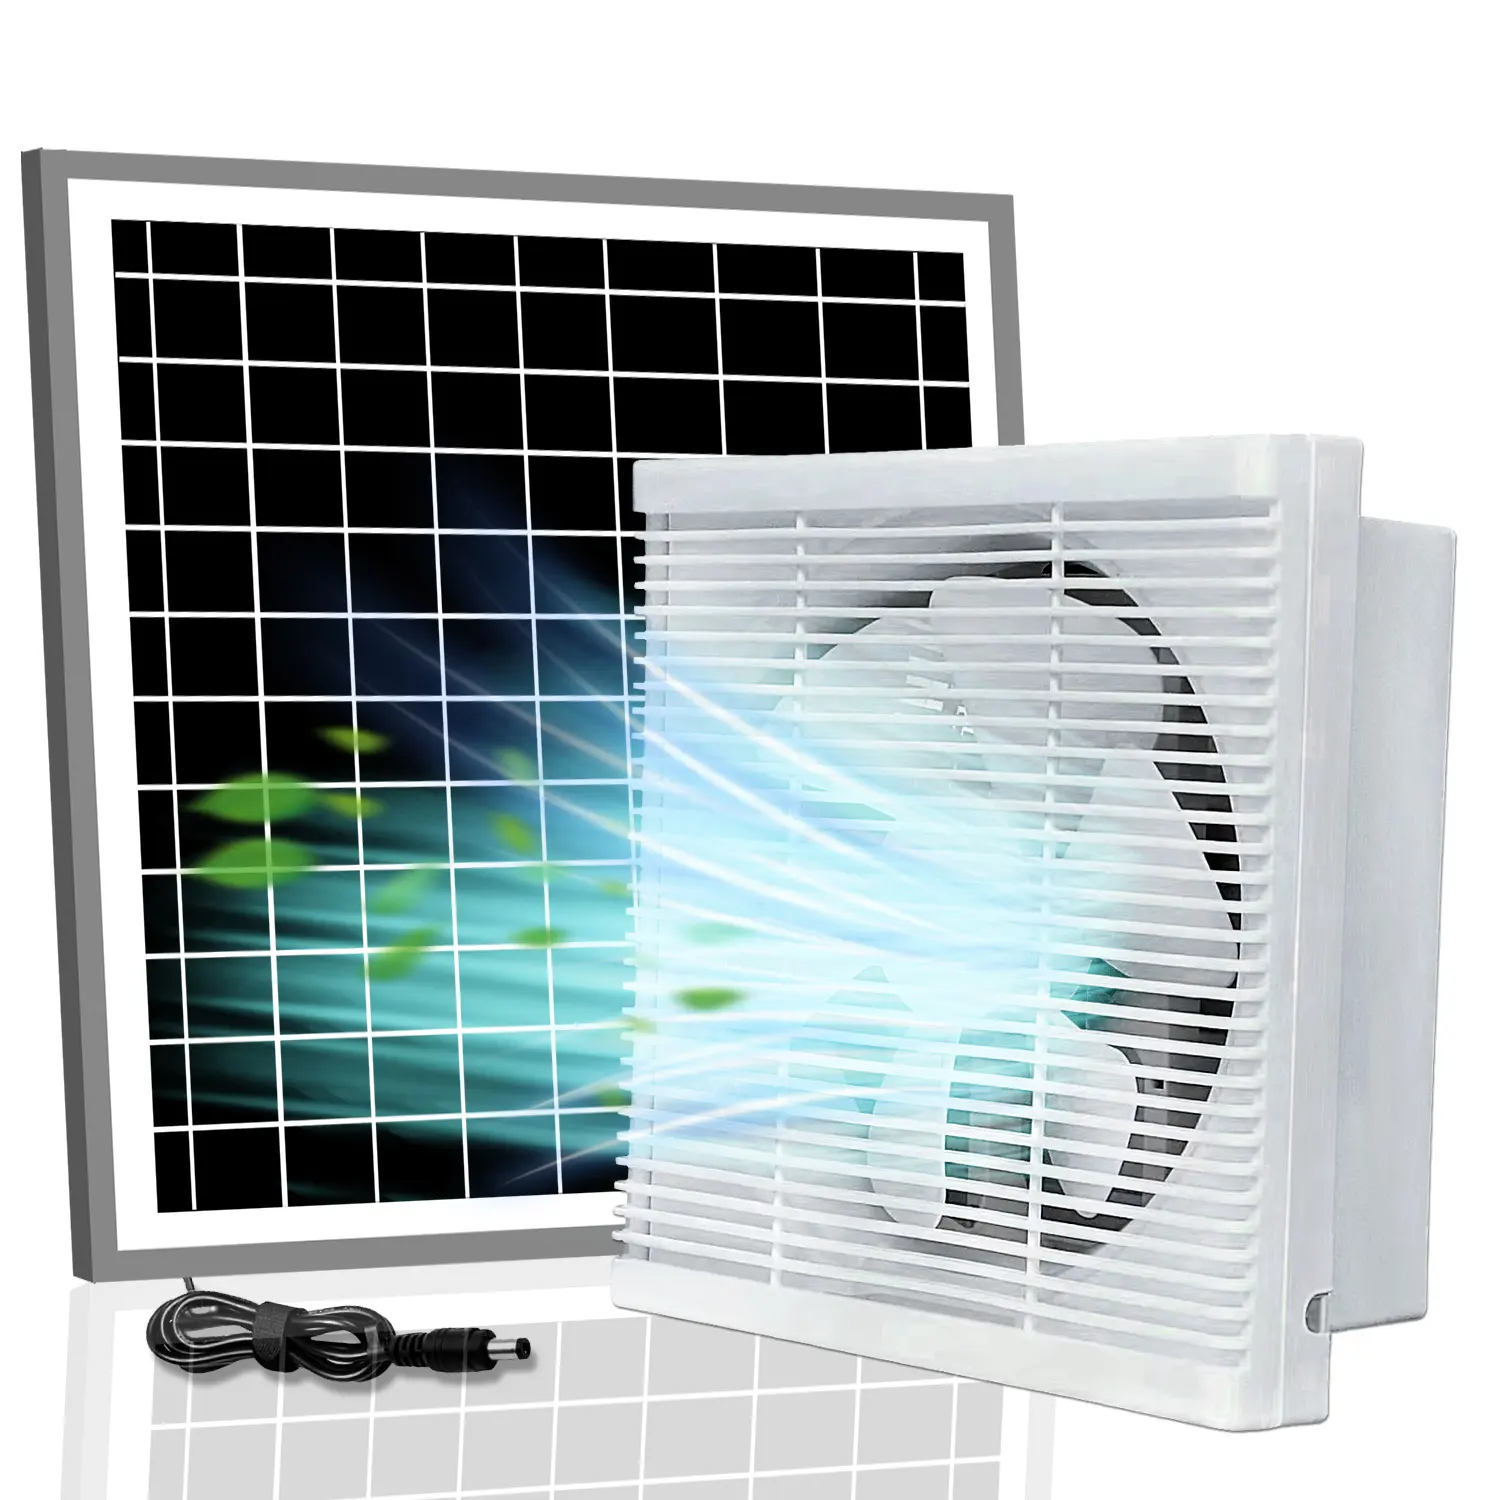 Năng lượng mặt trời 8 inch năng lượng mặt trời Quạt thông gió + 17W Bảng điều chỉnh phòng ngủ 12V động cơ không khí vắt Fan nhà bếp cửa sổ exaustor phòng tắm Quạt thông gió